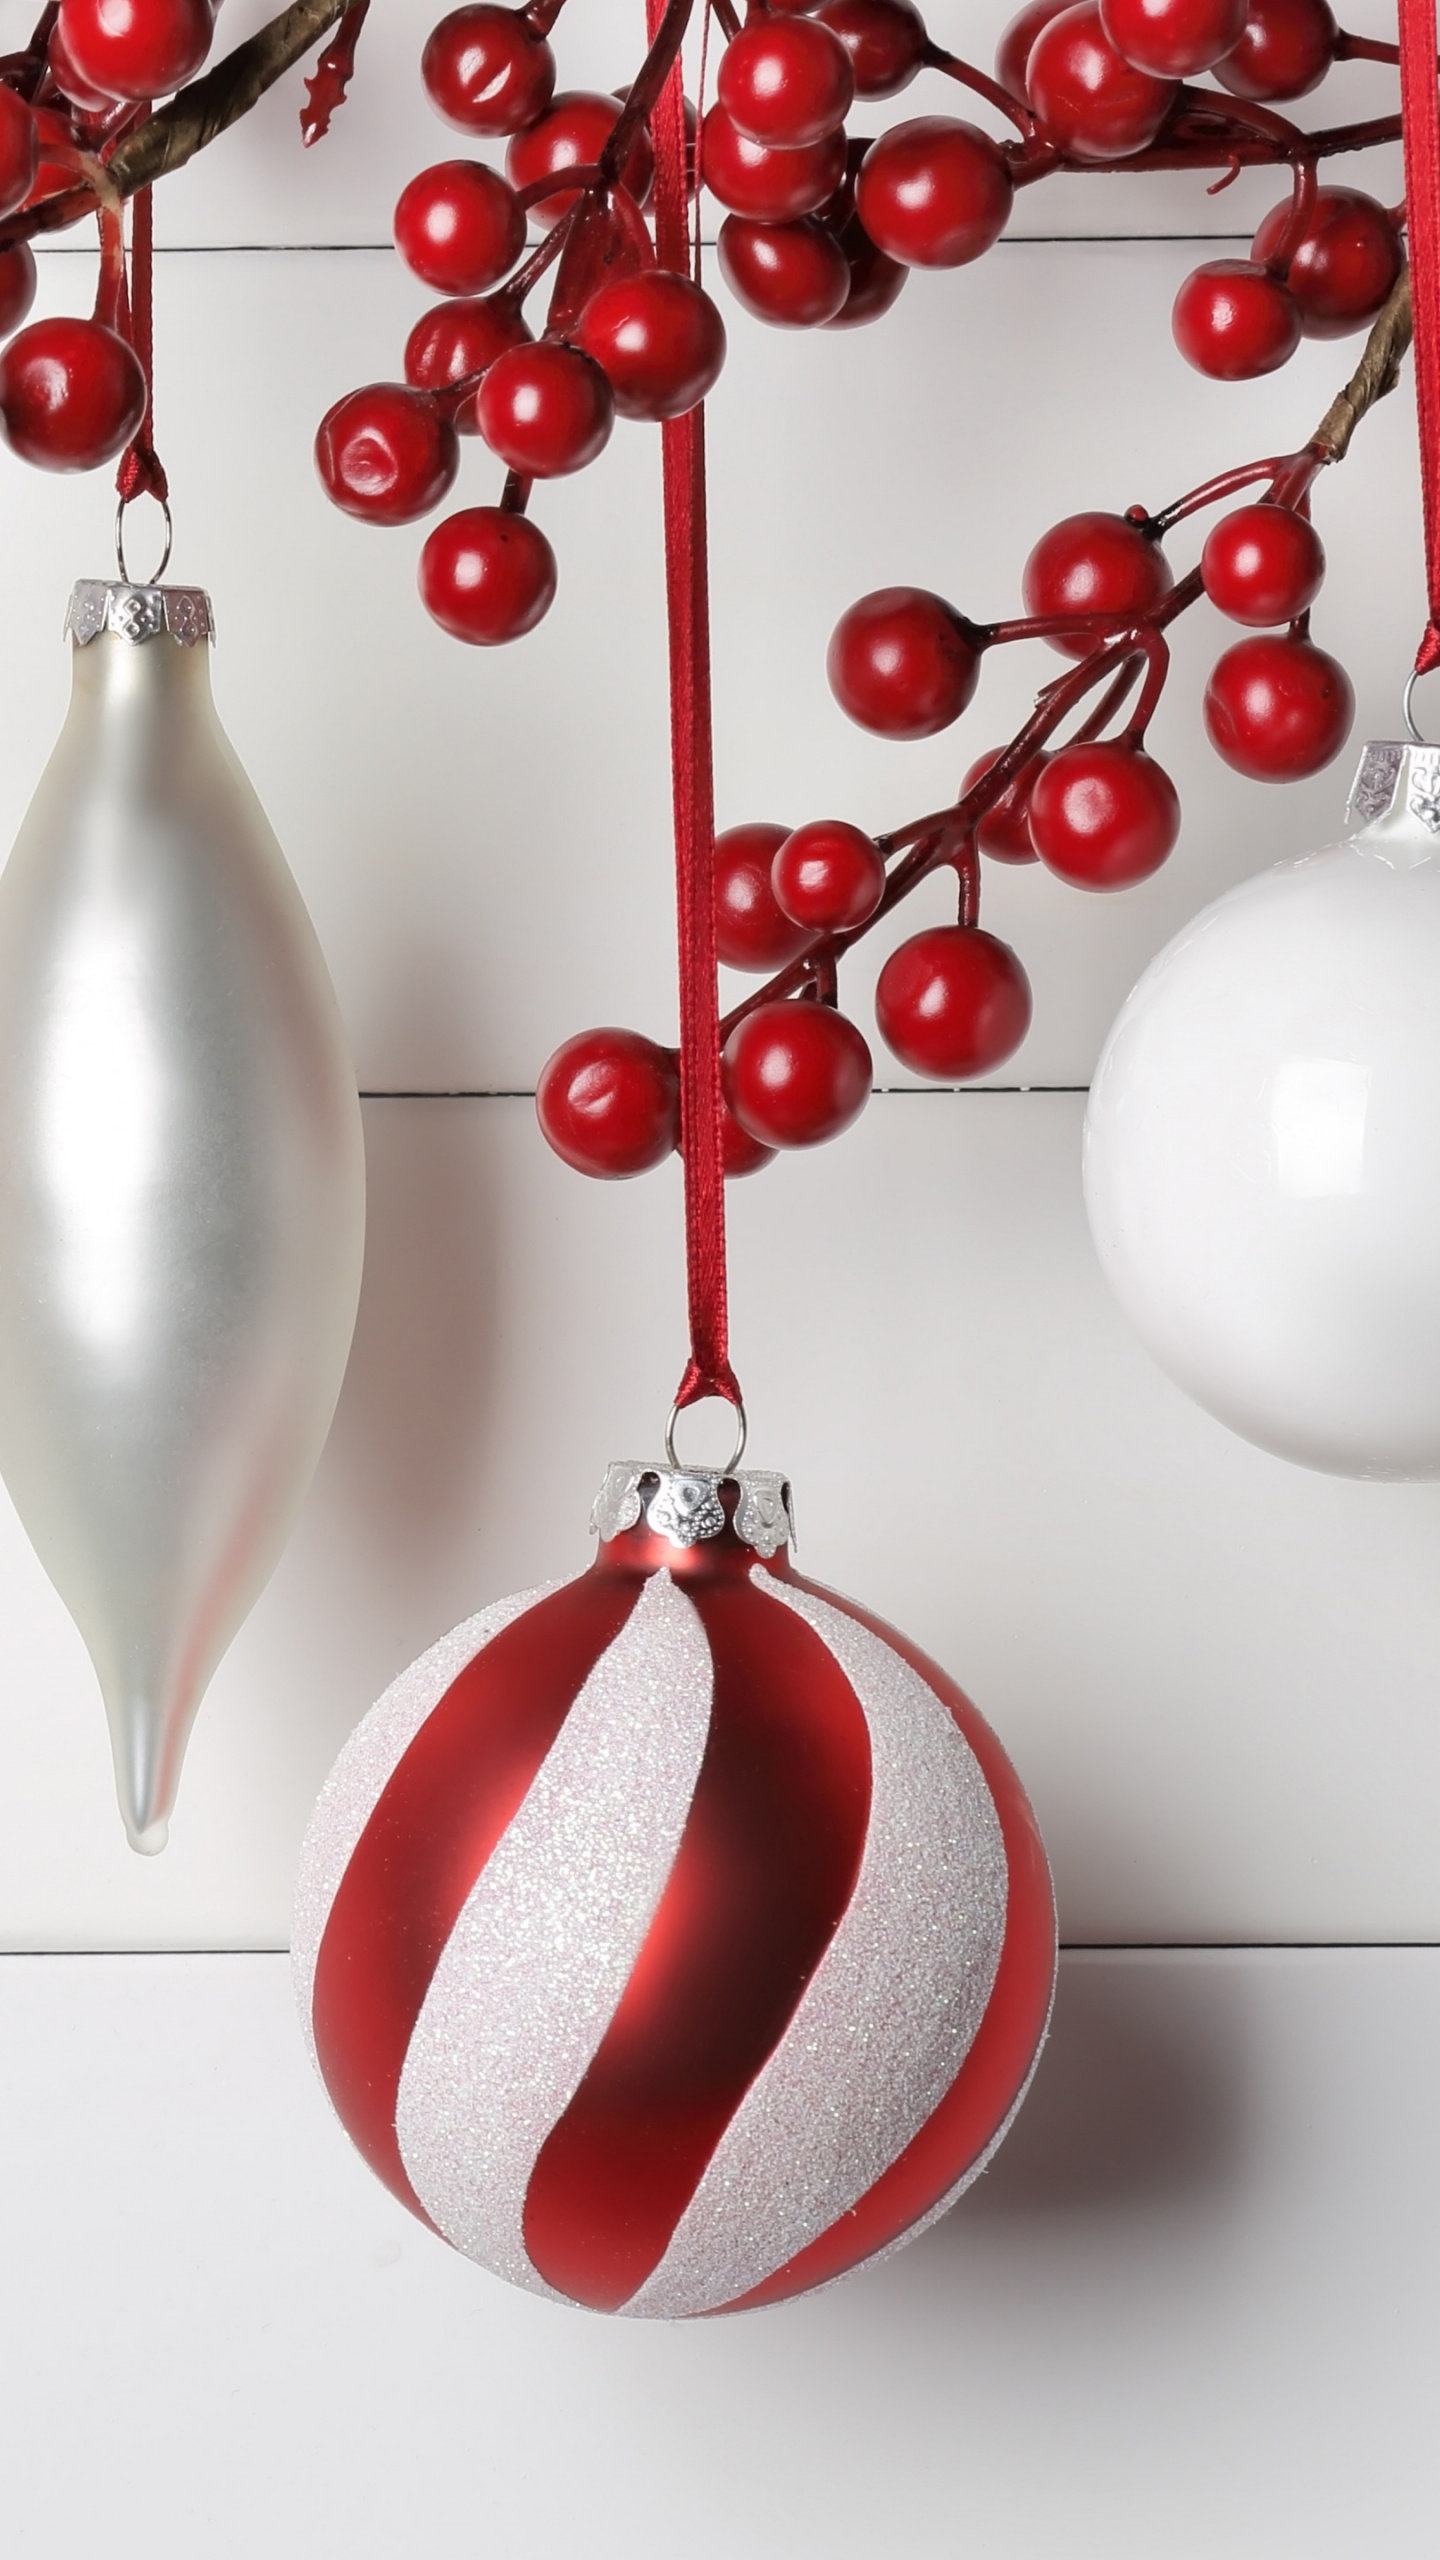 圣诞节那天, 圣诞节的装饰品, 圣诞装饰, 新的一年, 红色的 壁纸 1440x2560 允许